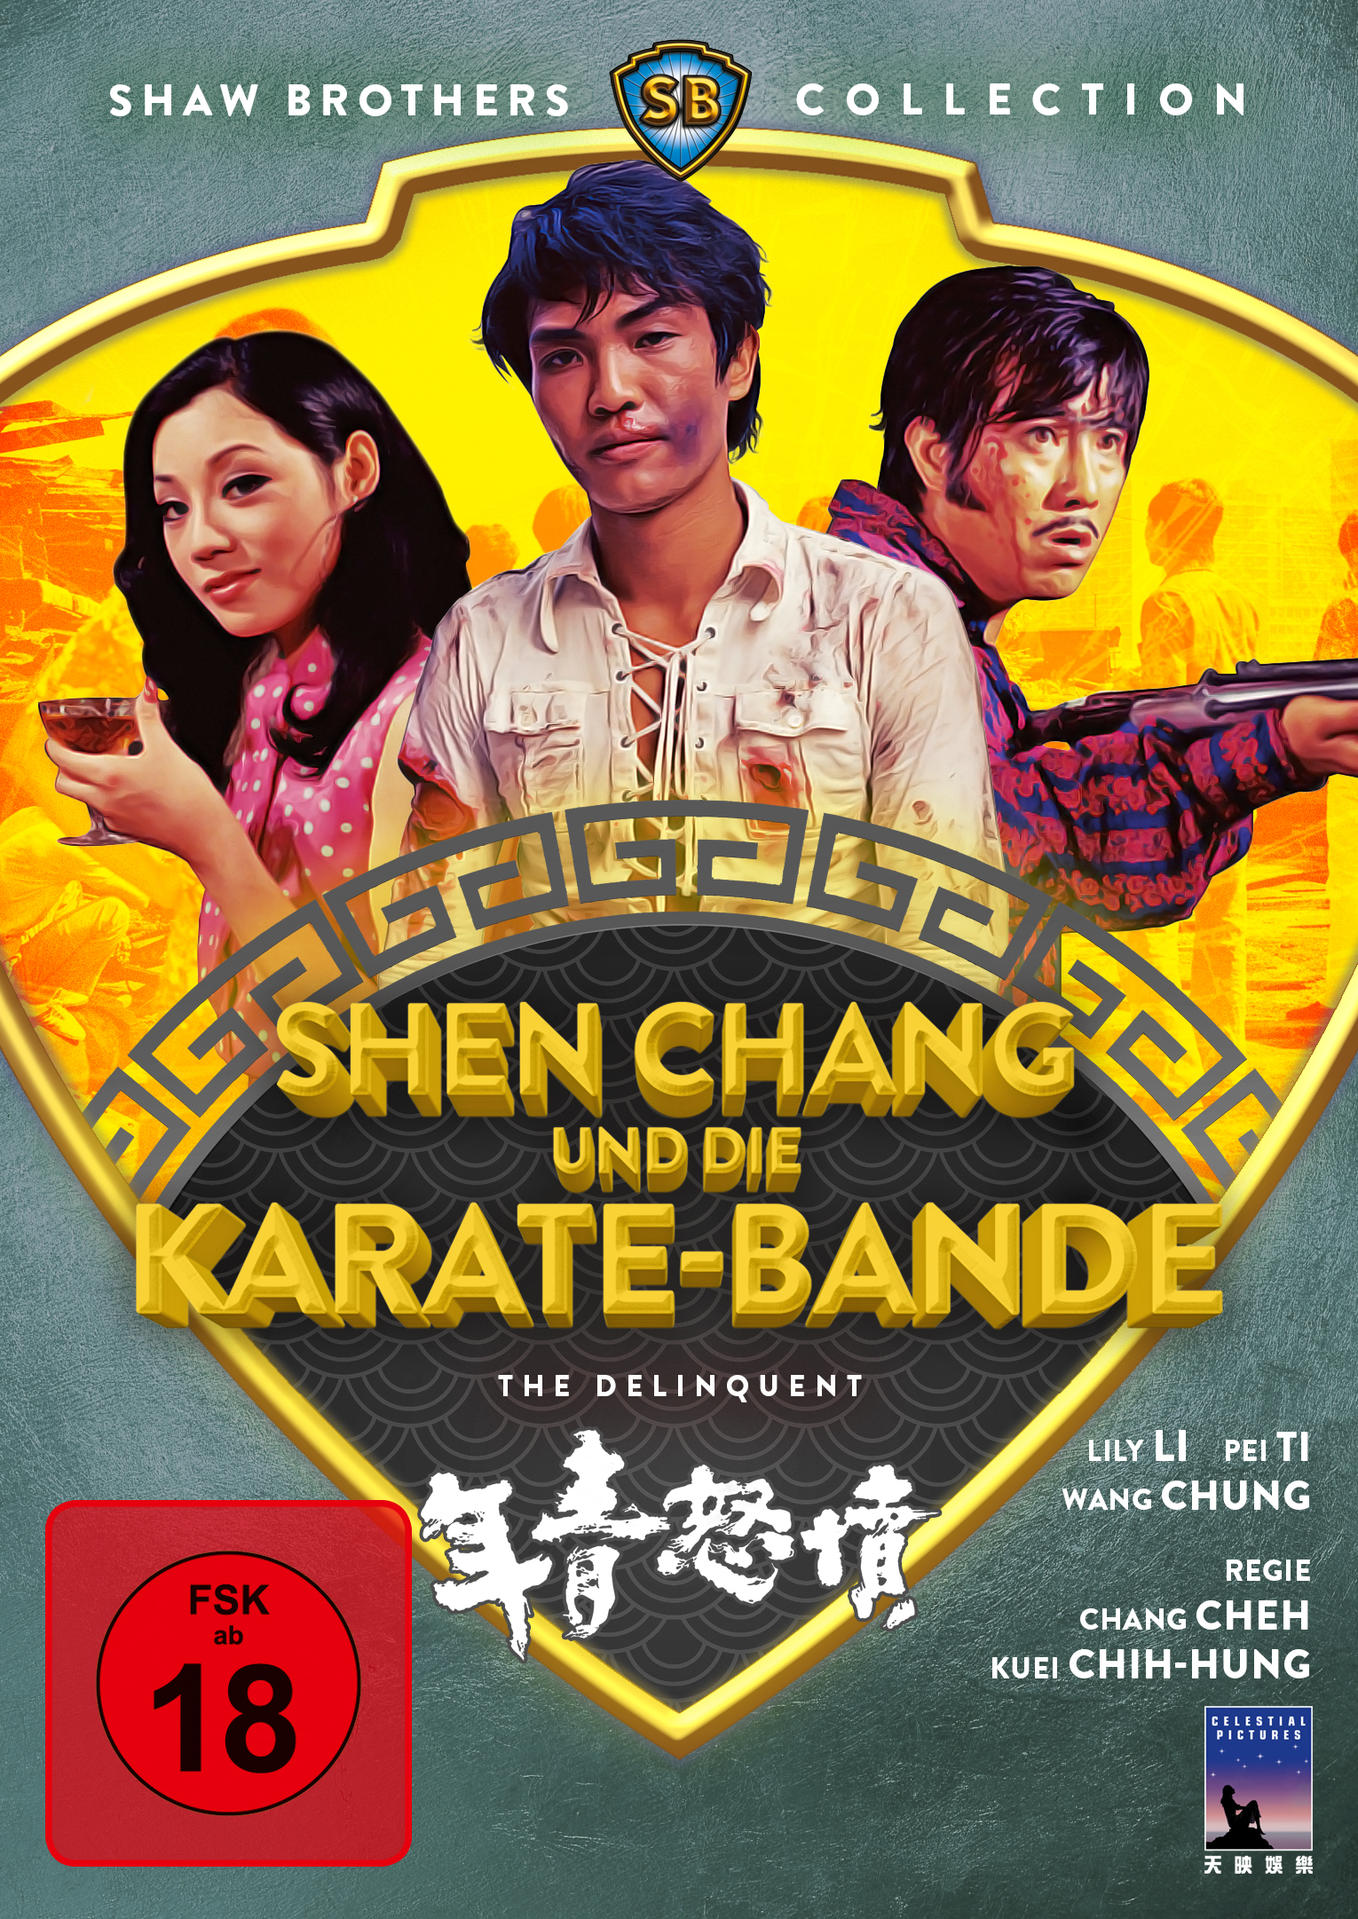 DVD Chang die Karate-Bande und Shen